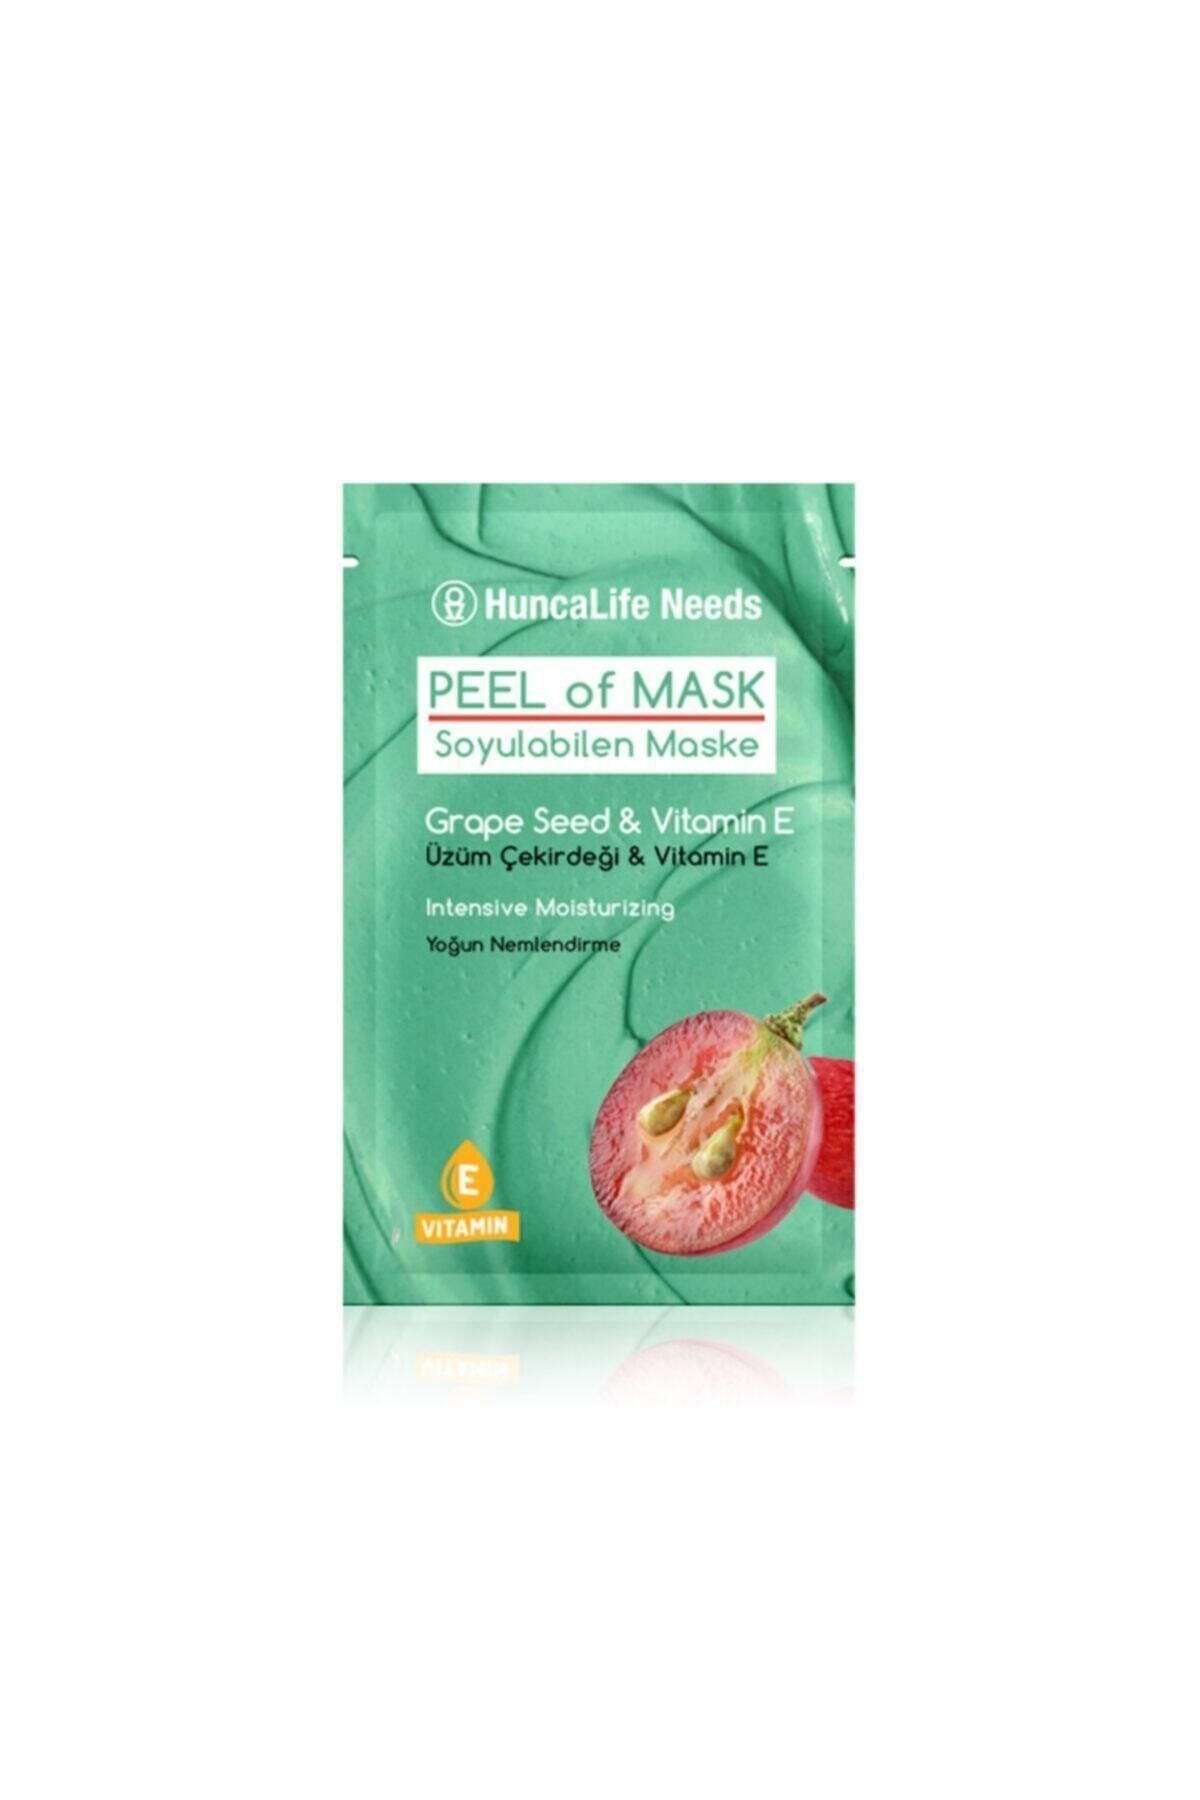 Huncalife Needs Üzüm Çekirdeği&vitamin E Soyulabilen Maske 10mlx 3 Adet